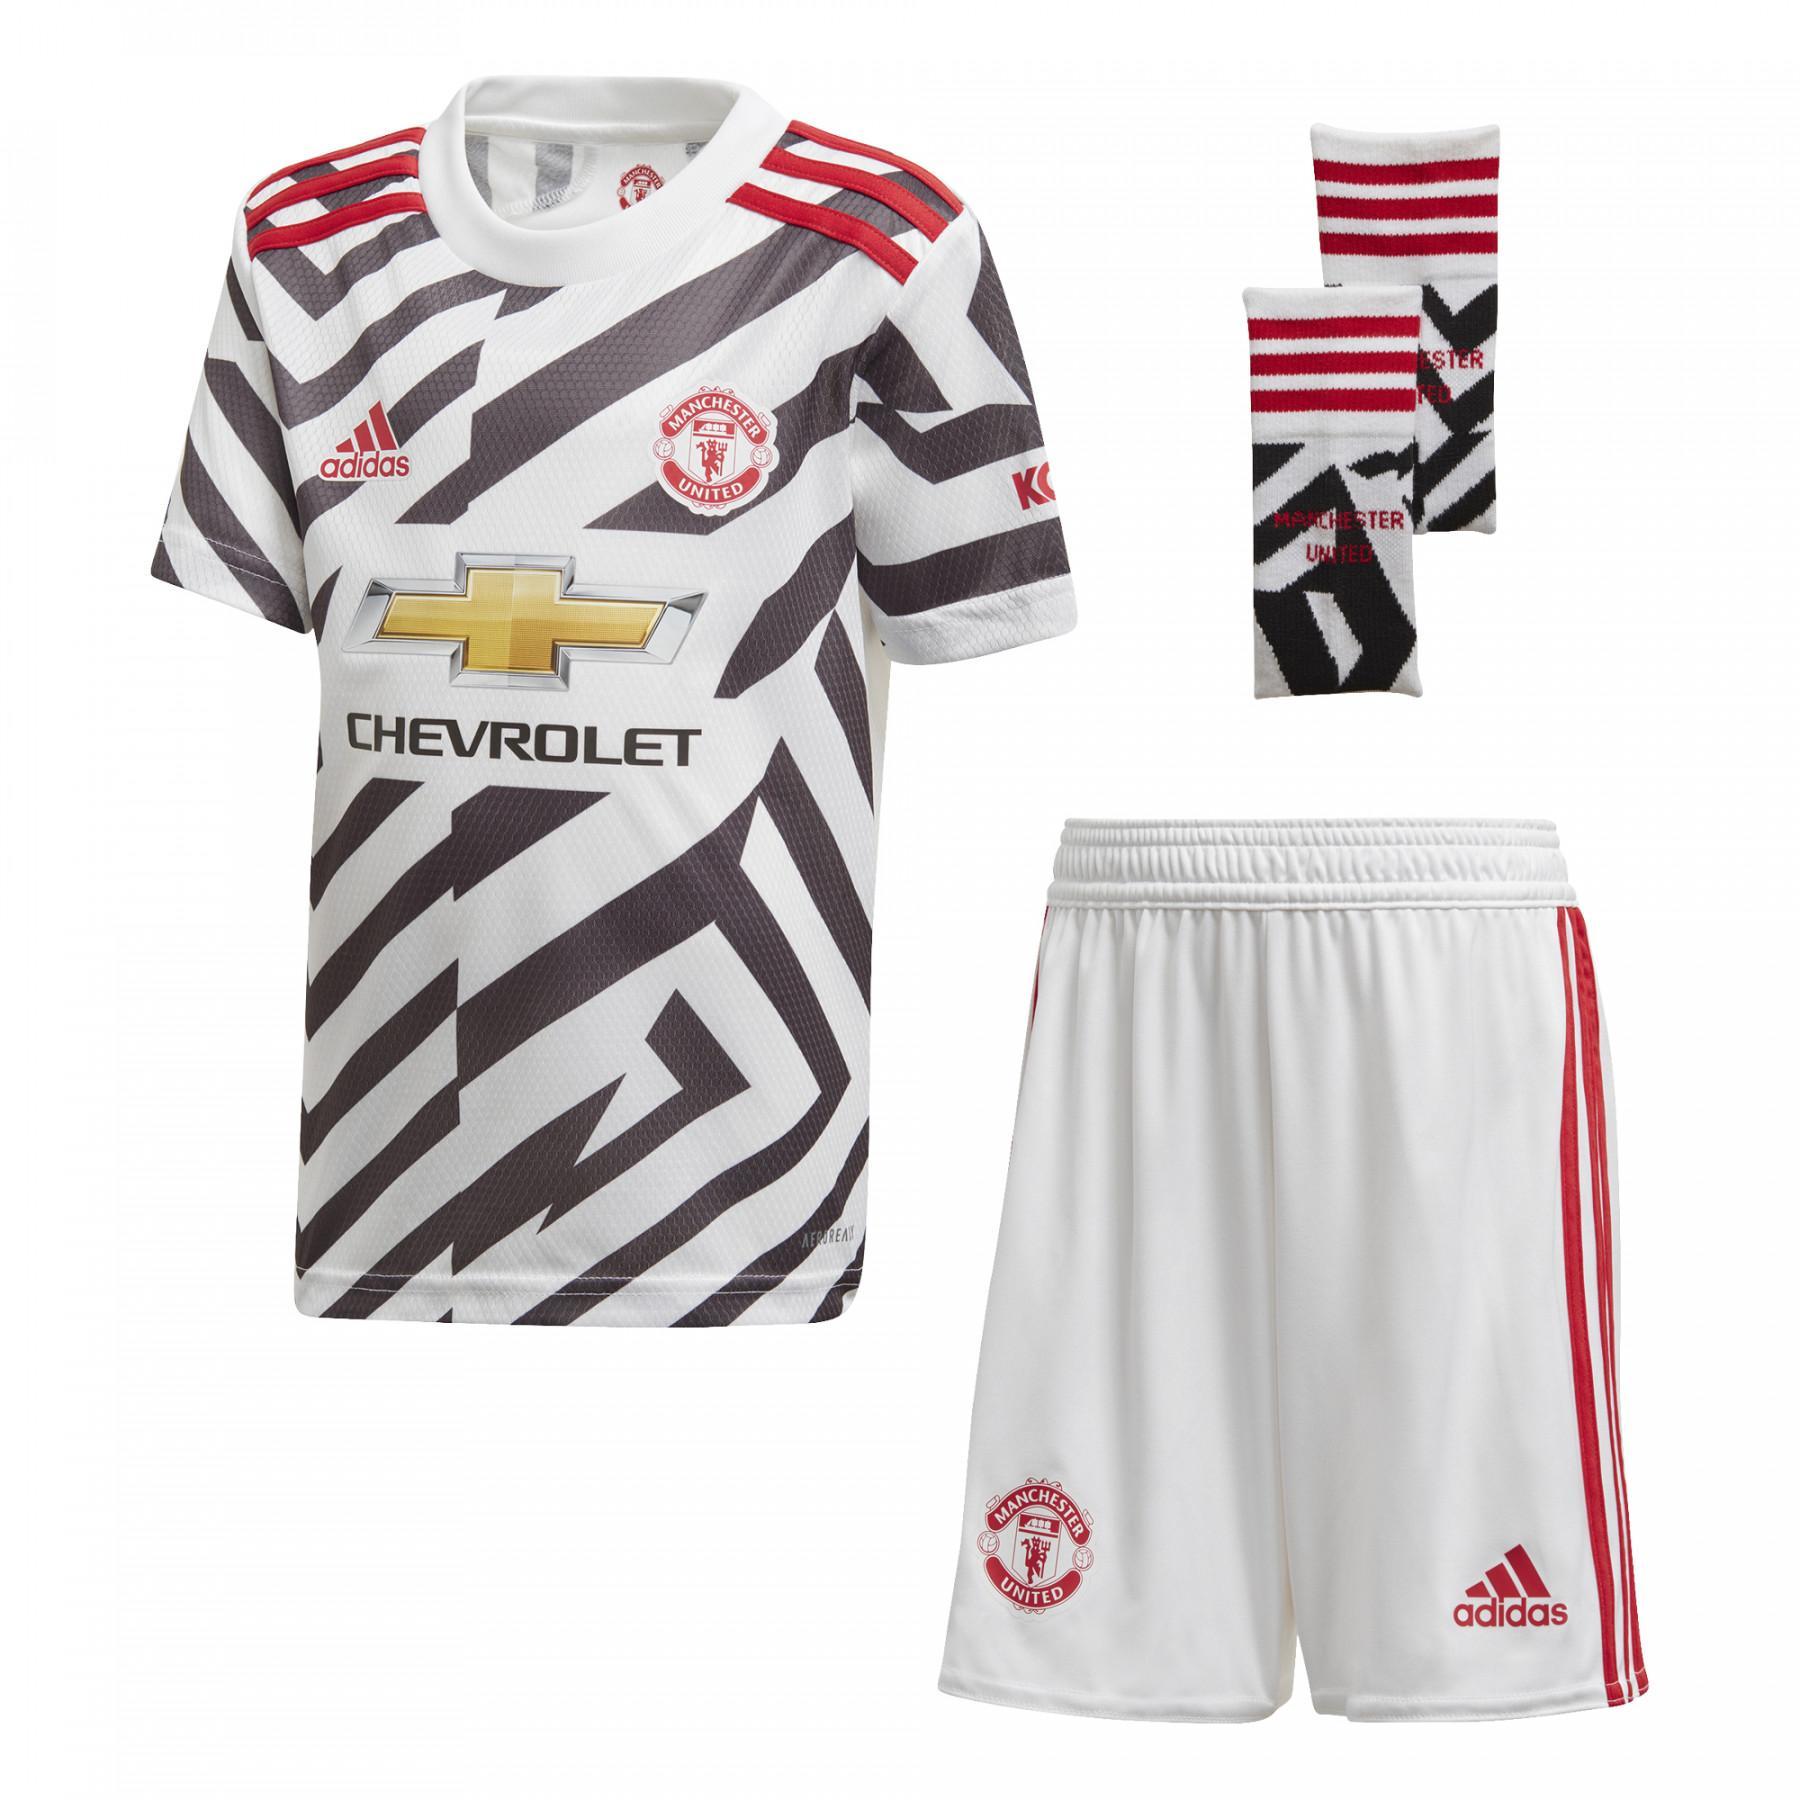 Mini-kit terceiro Manchester United 2020/21